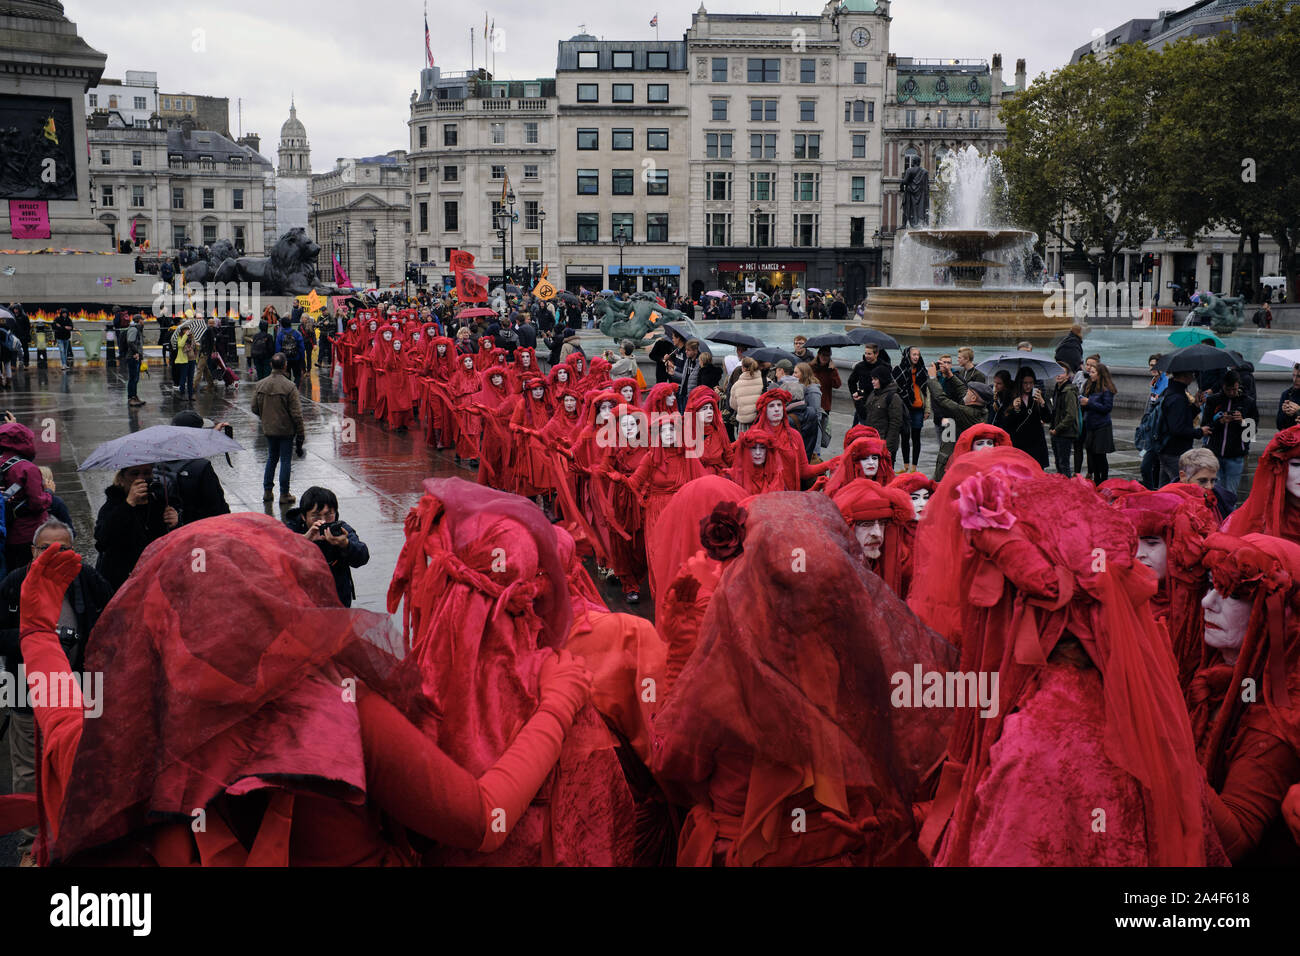 La Brigade rouge pendant la Rébellion Extinction manifestation à Trafalgar Square, Londres. Banque D'Images